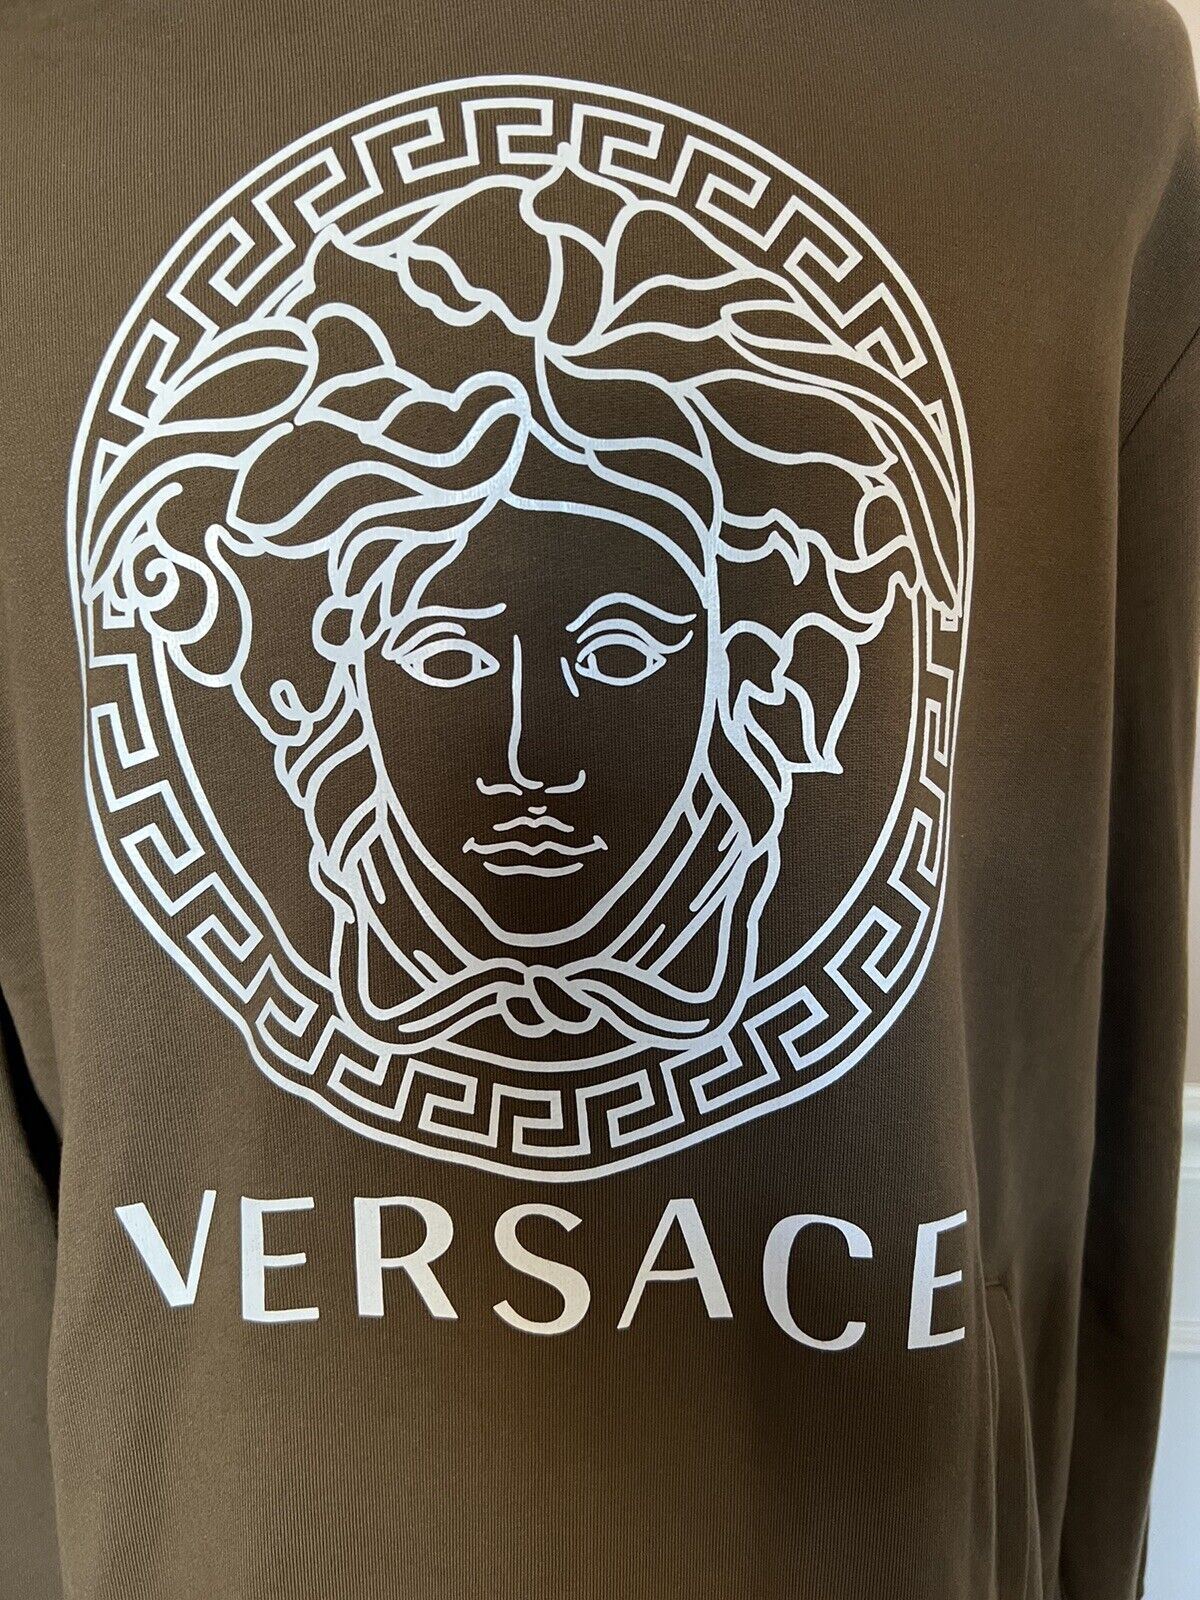 NWT $750 Versace Оливковый хлопковый свитшот с принтом Medusa и худи 4XL A89514S IT 